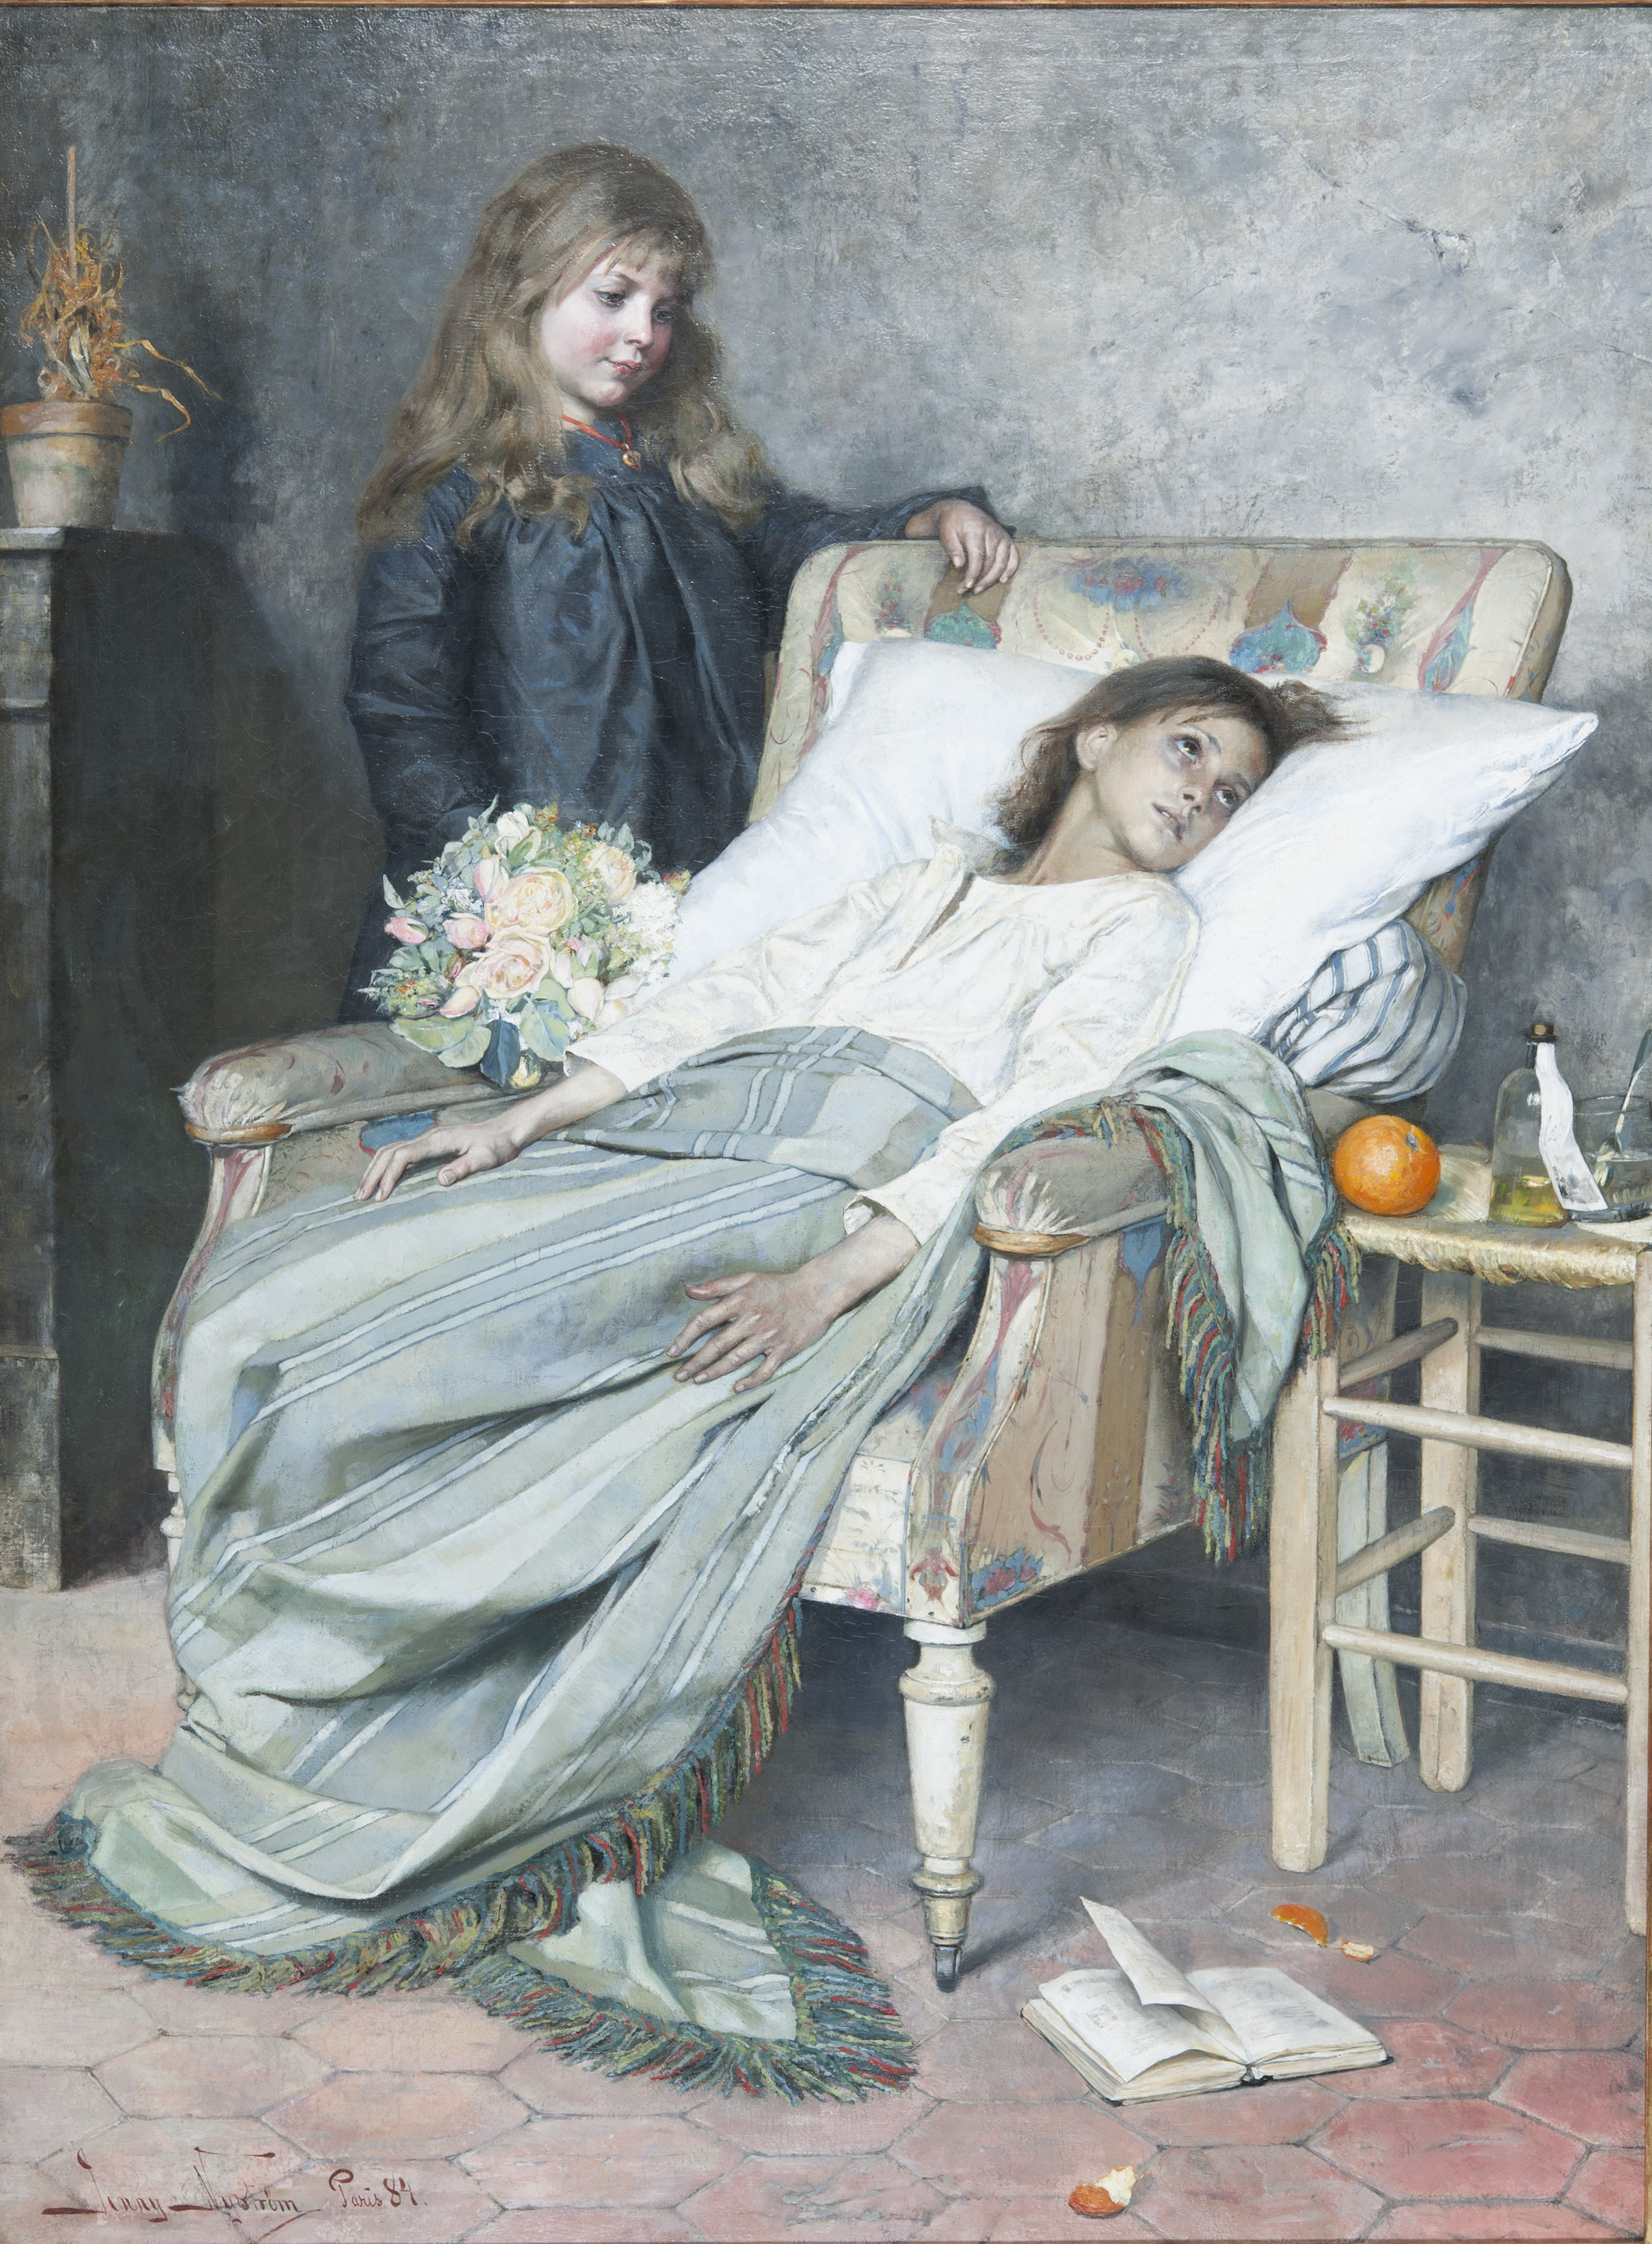 療養中の人 by Jenny Nyström - 1884年 - 154 x 115 cm 